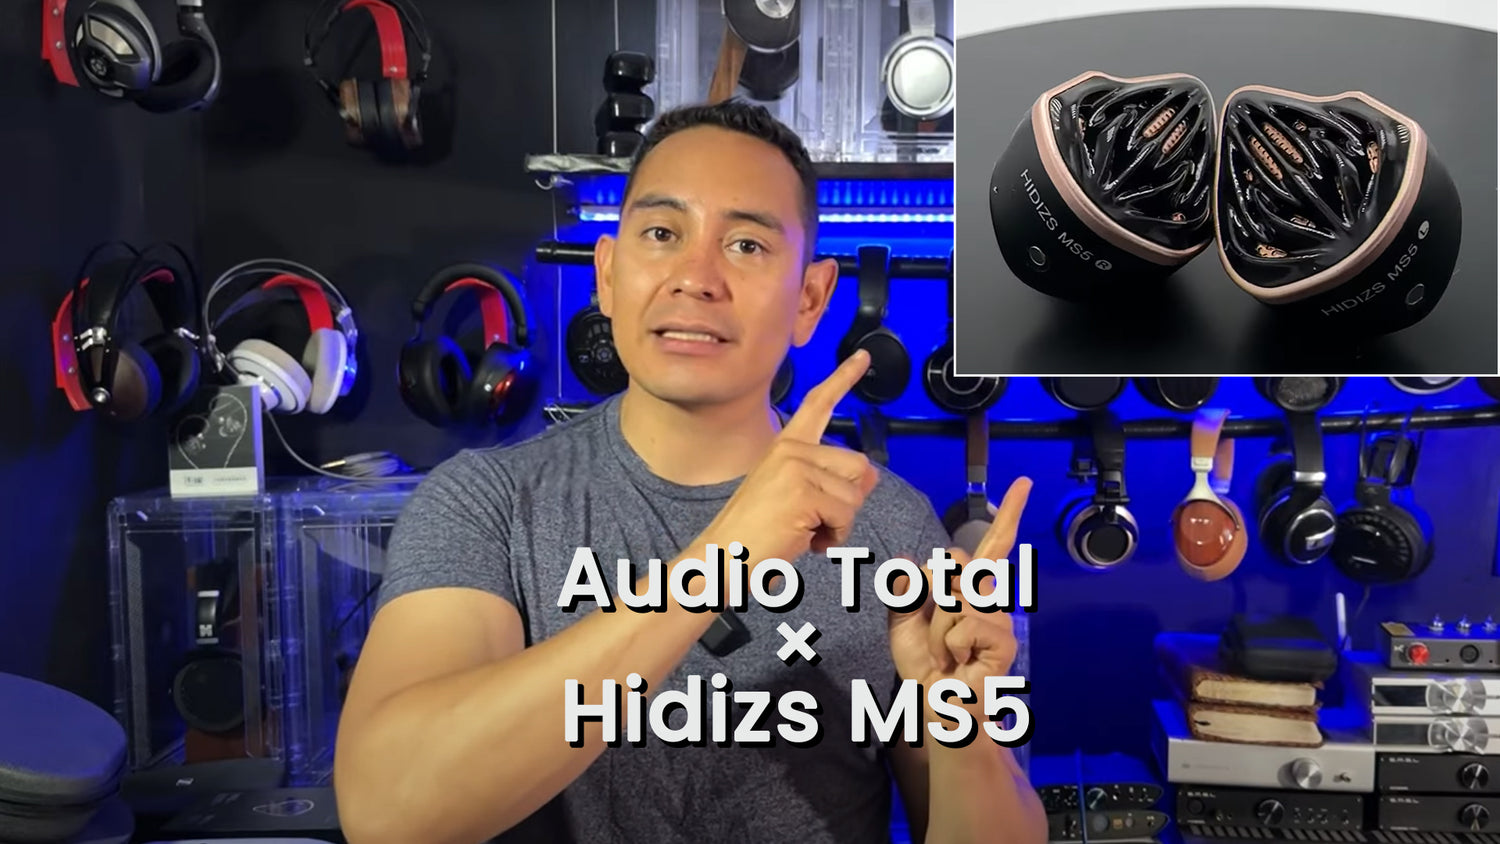 HIDIZS MS5 REVIEWS - Audio total